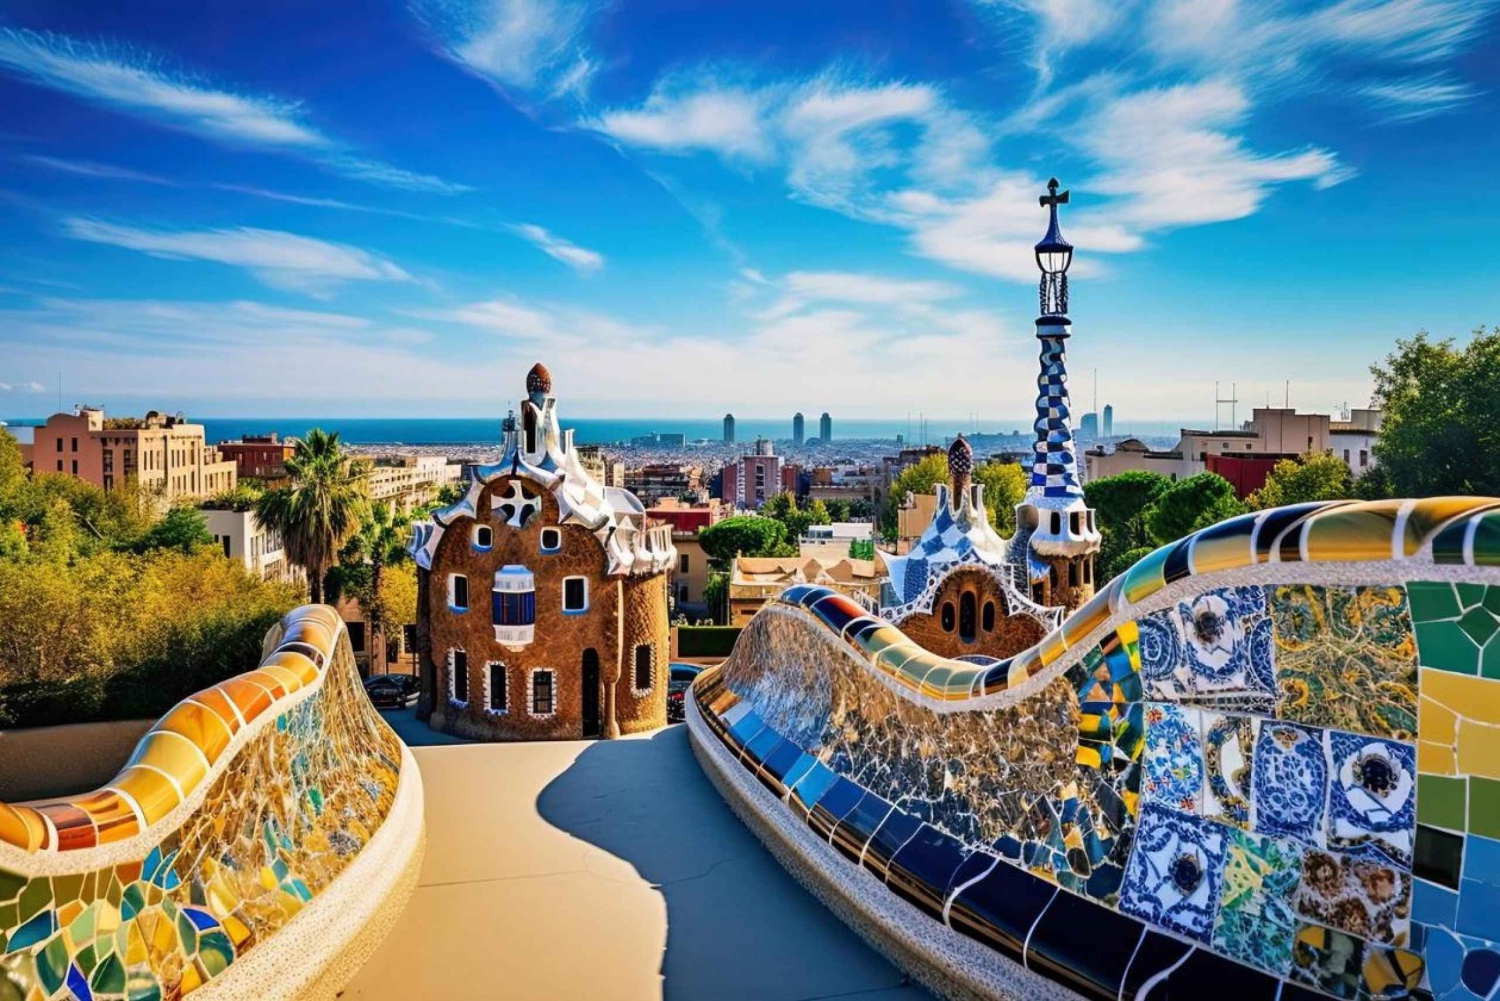 Barcelona: Barcelonan parhaat paikat paikallisen kanssa: Kaappaa kaikkein valokuvauksellisimmat paikat